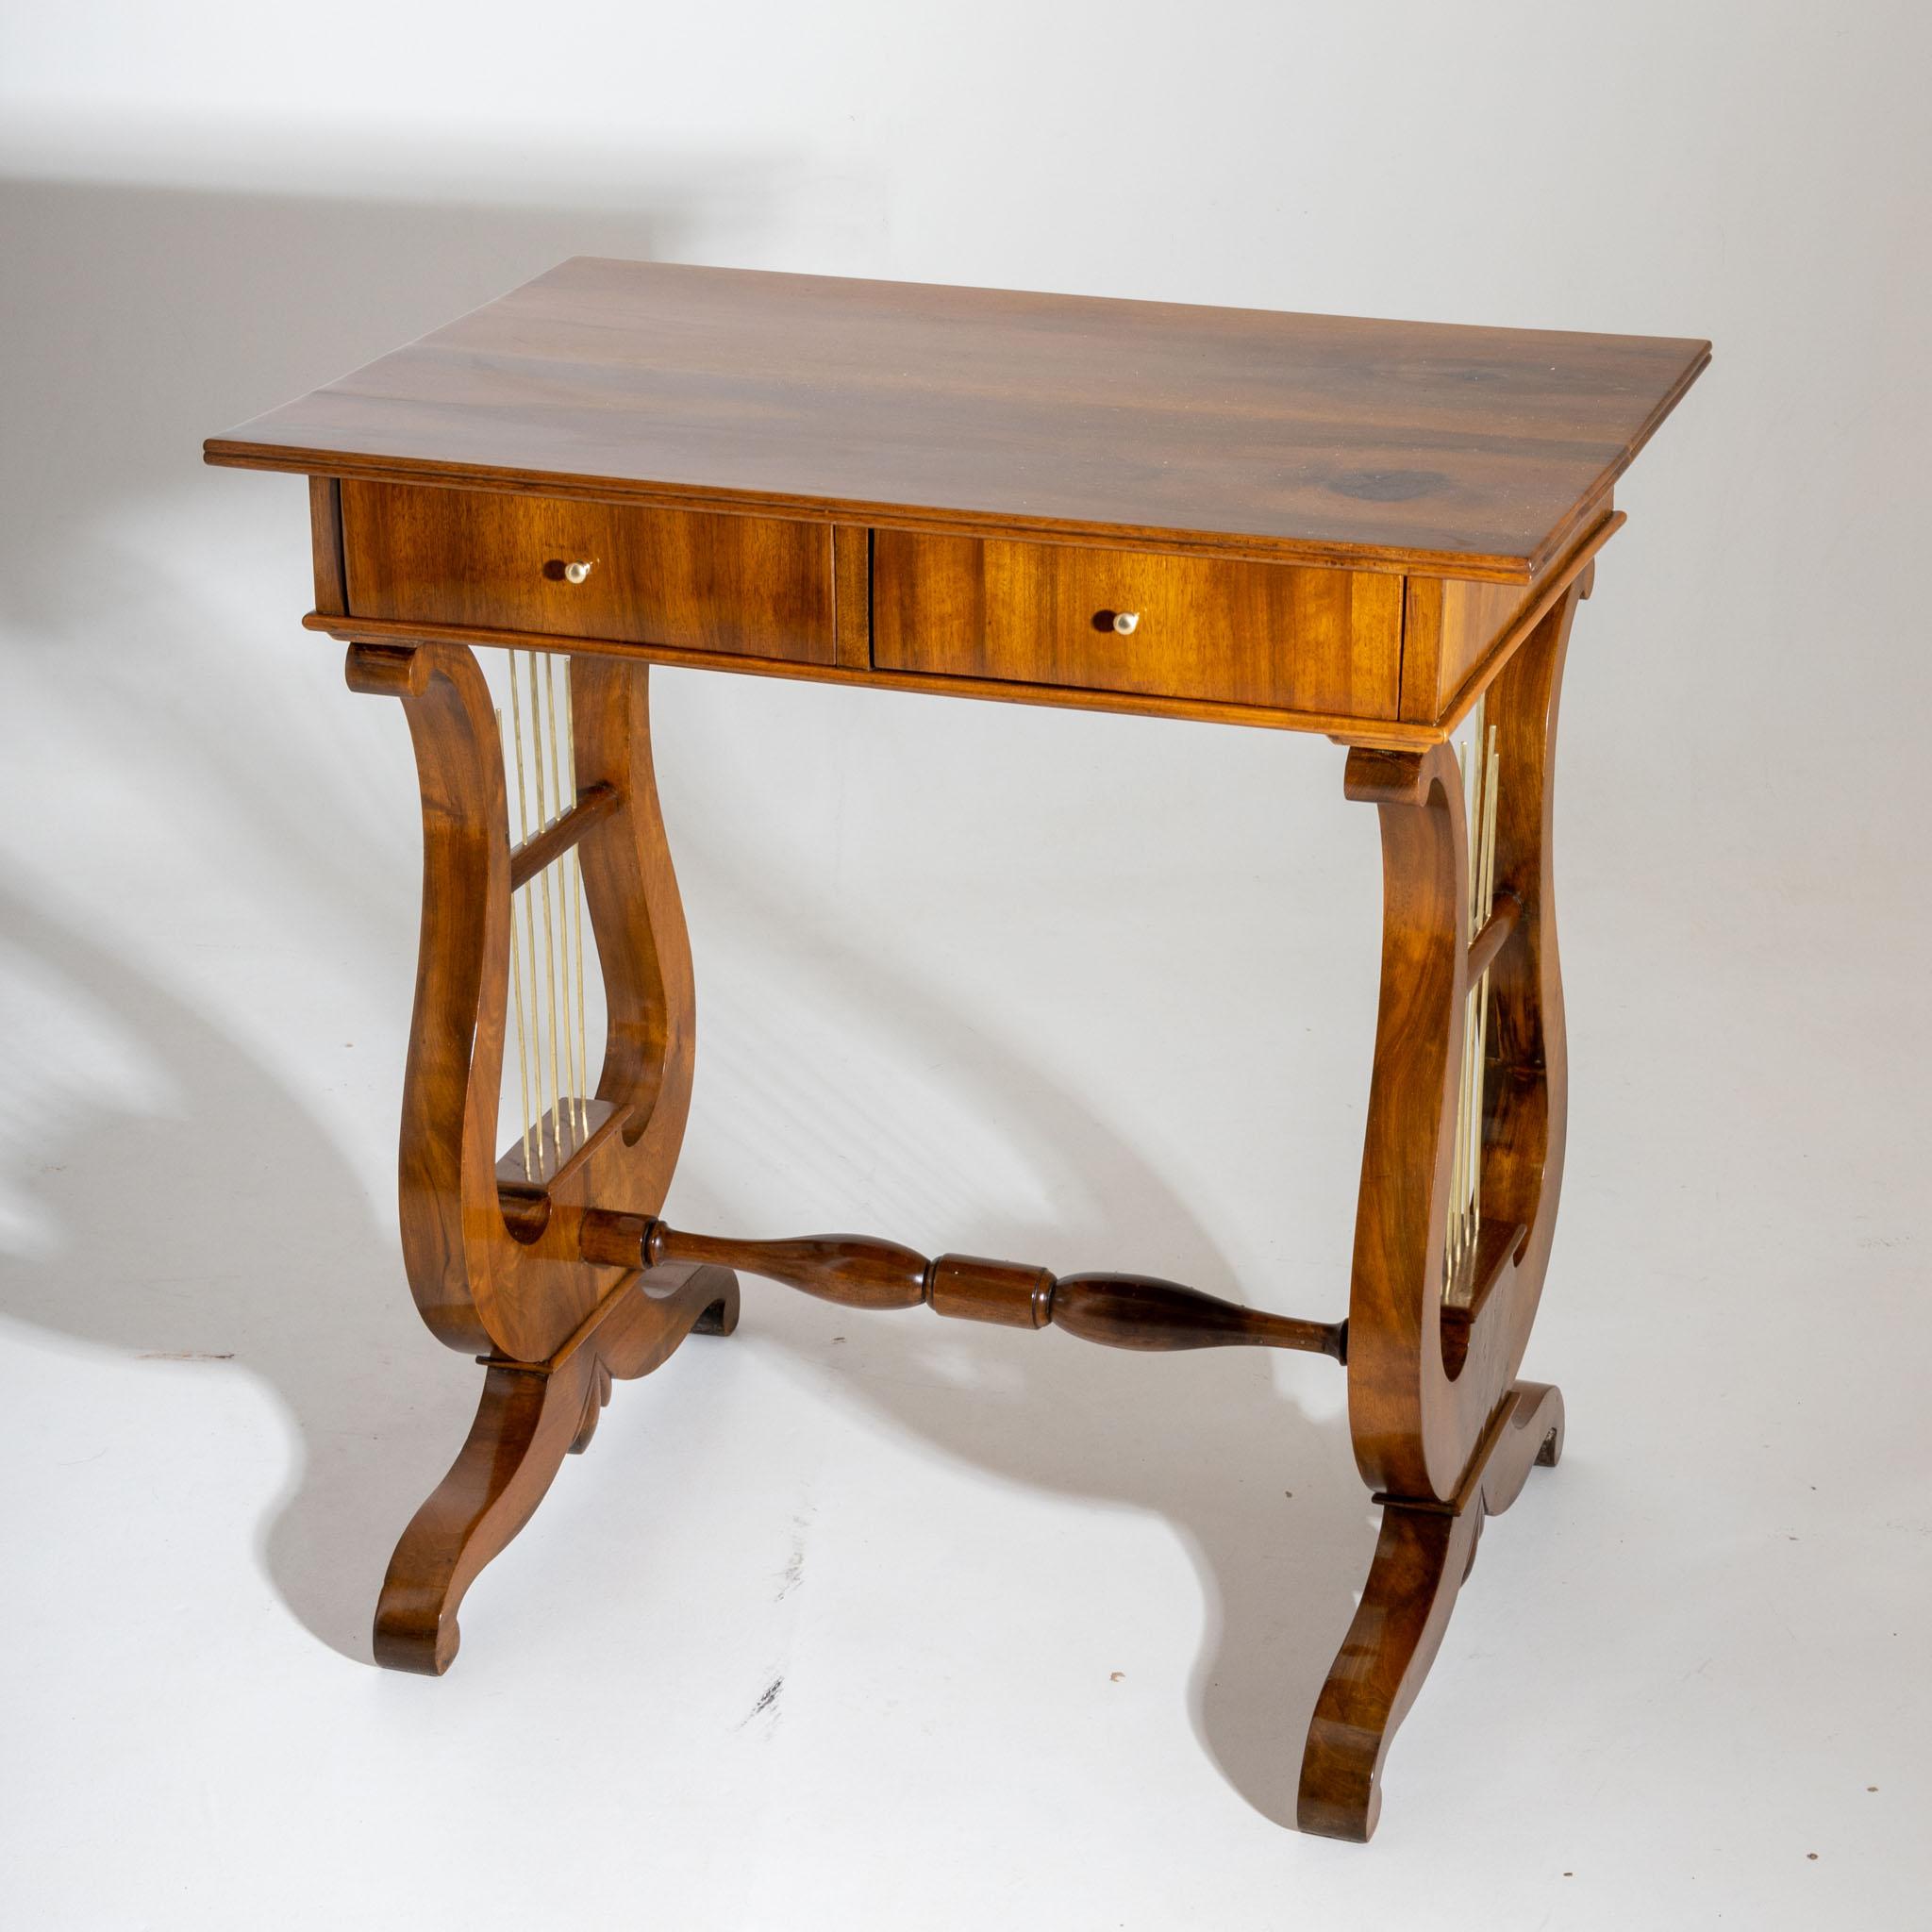 Biedermeier Arbeitstisch mit lyraförmigem Gestell und vier Schubladen. Der Tisch ist in Nussbaum furniert und handpoliert.